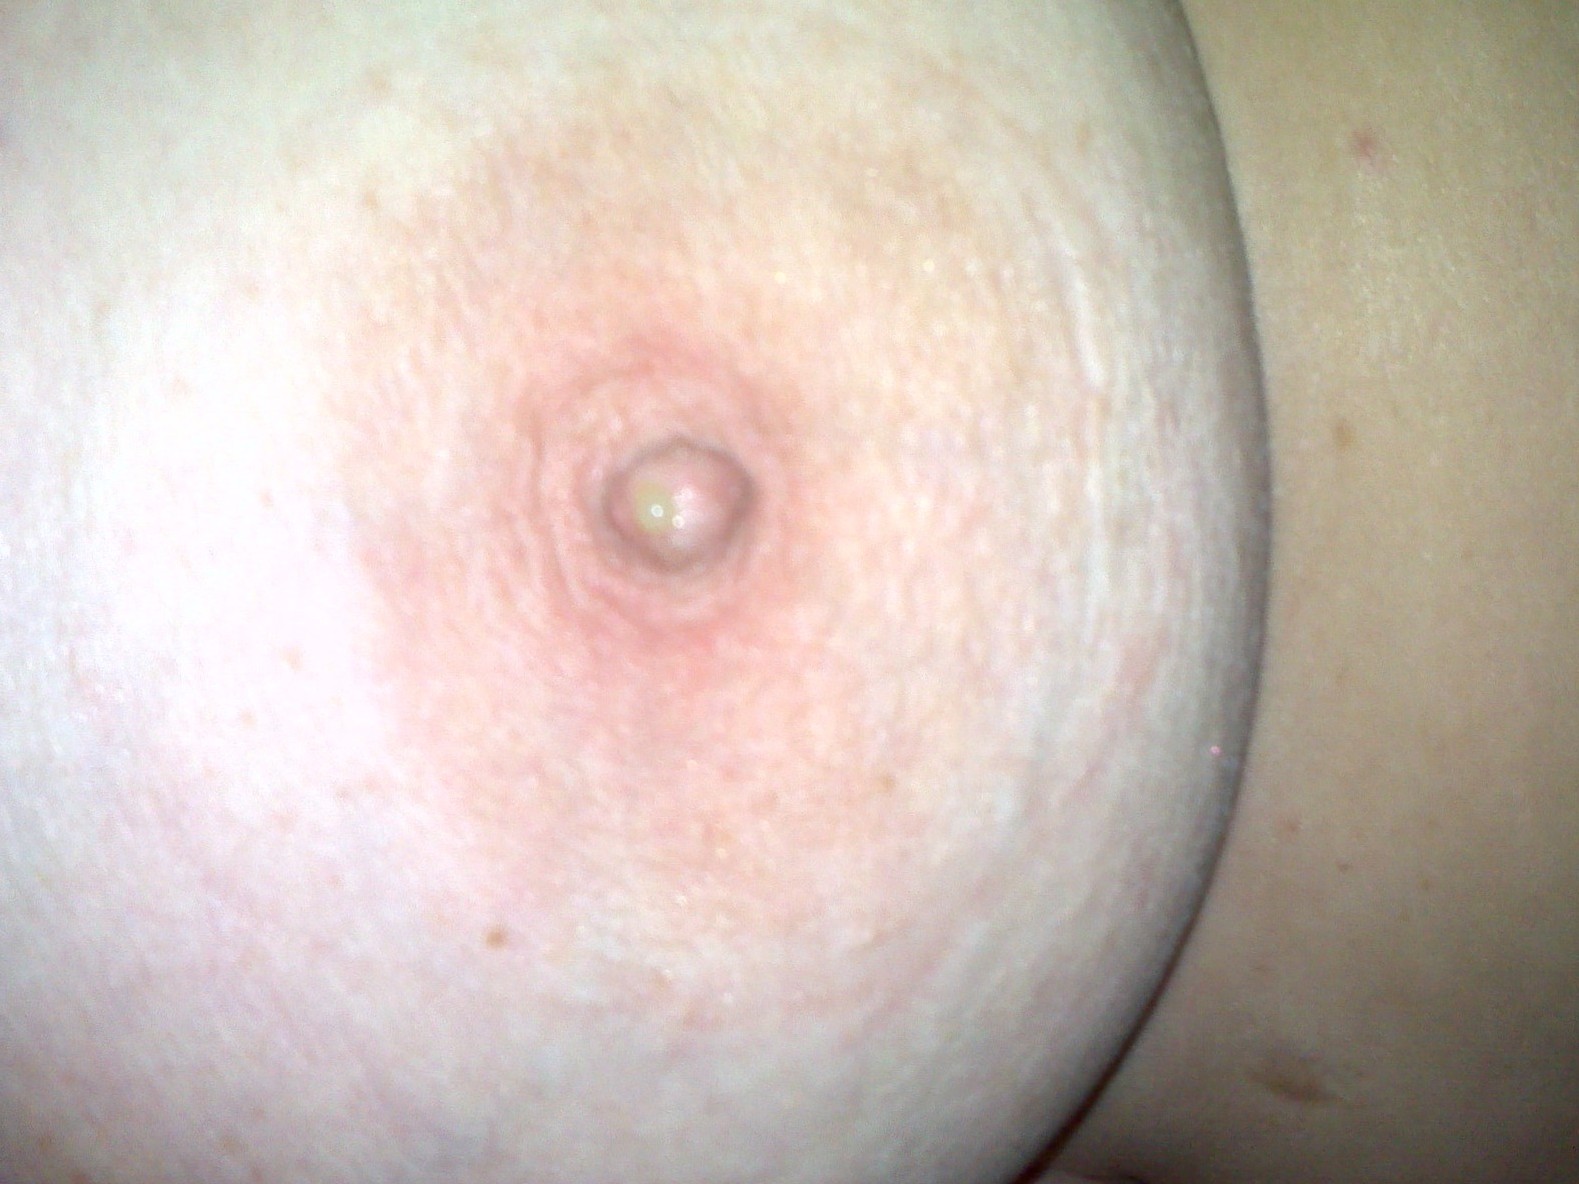 Mmmmm nipple time.